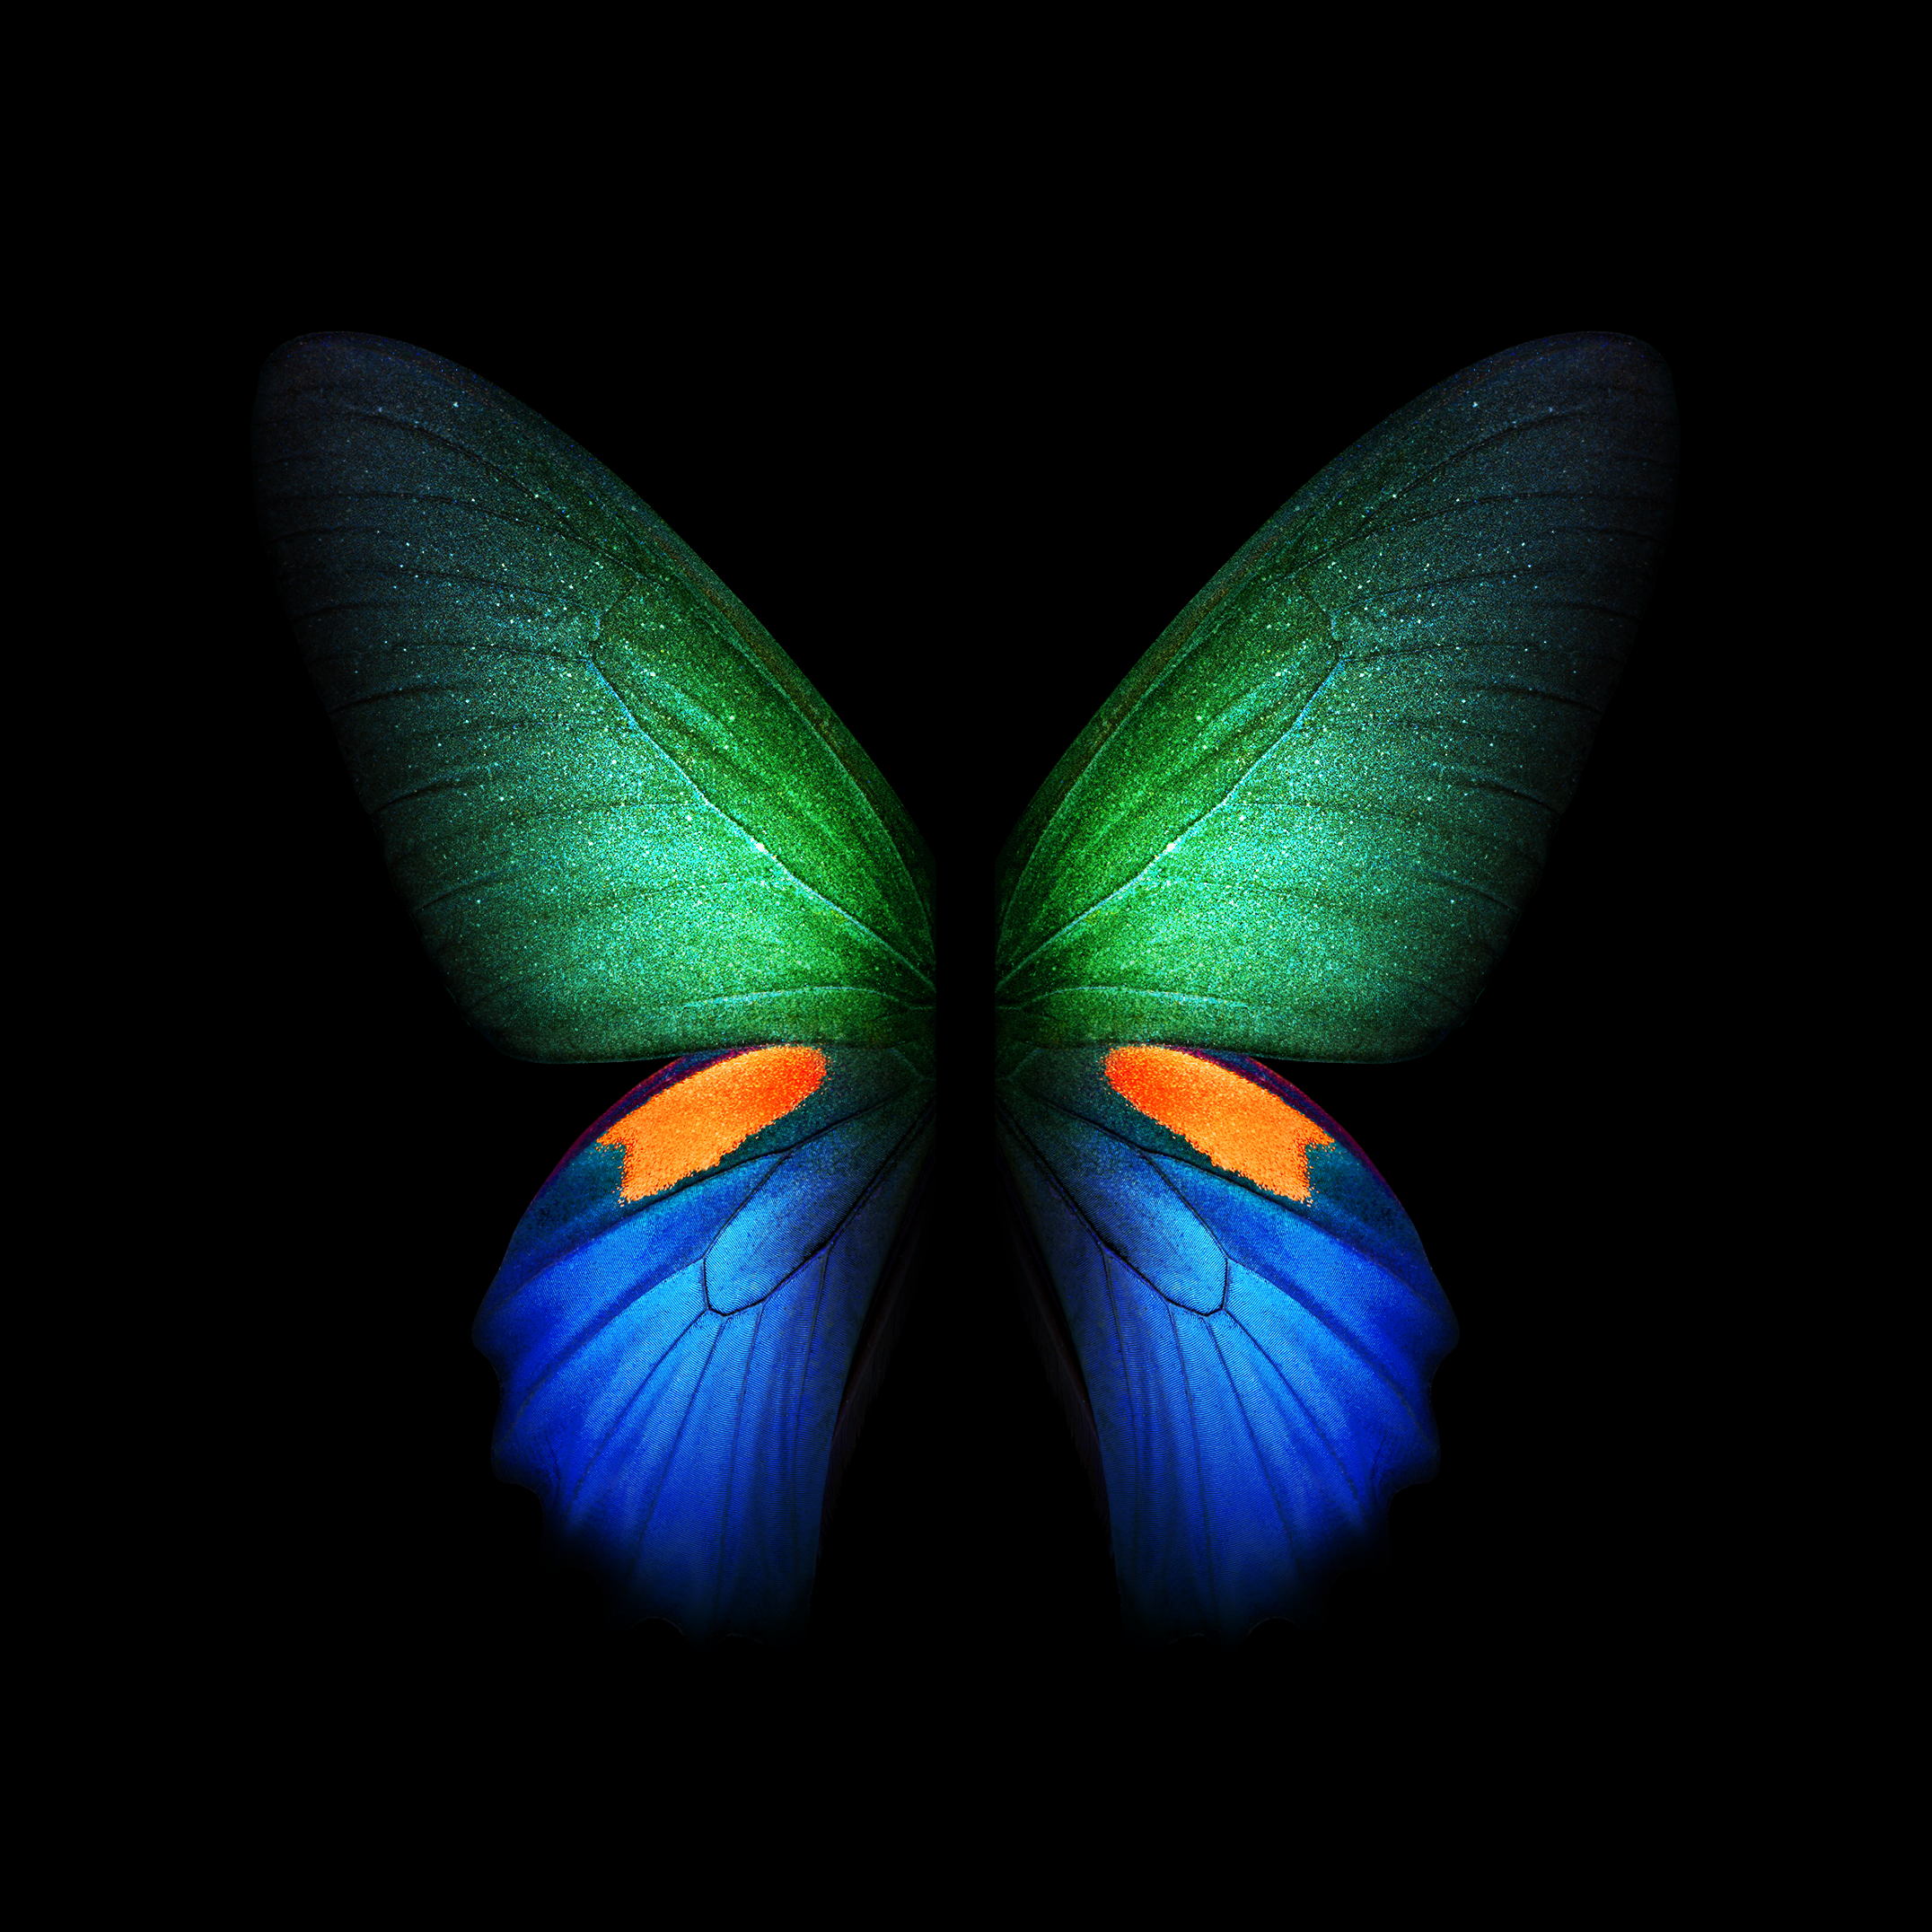 sfondi per cellulari hd per samsung,la farfalla,insetto,falene e farfalle,blu,simmetria